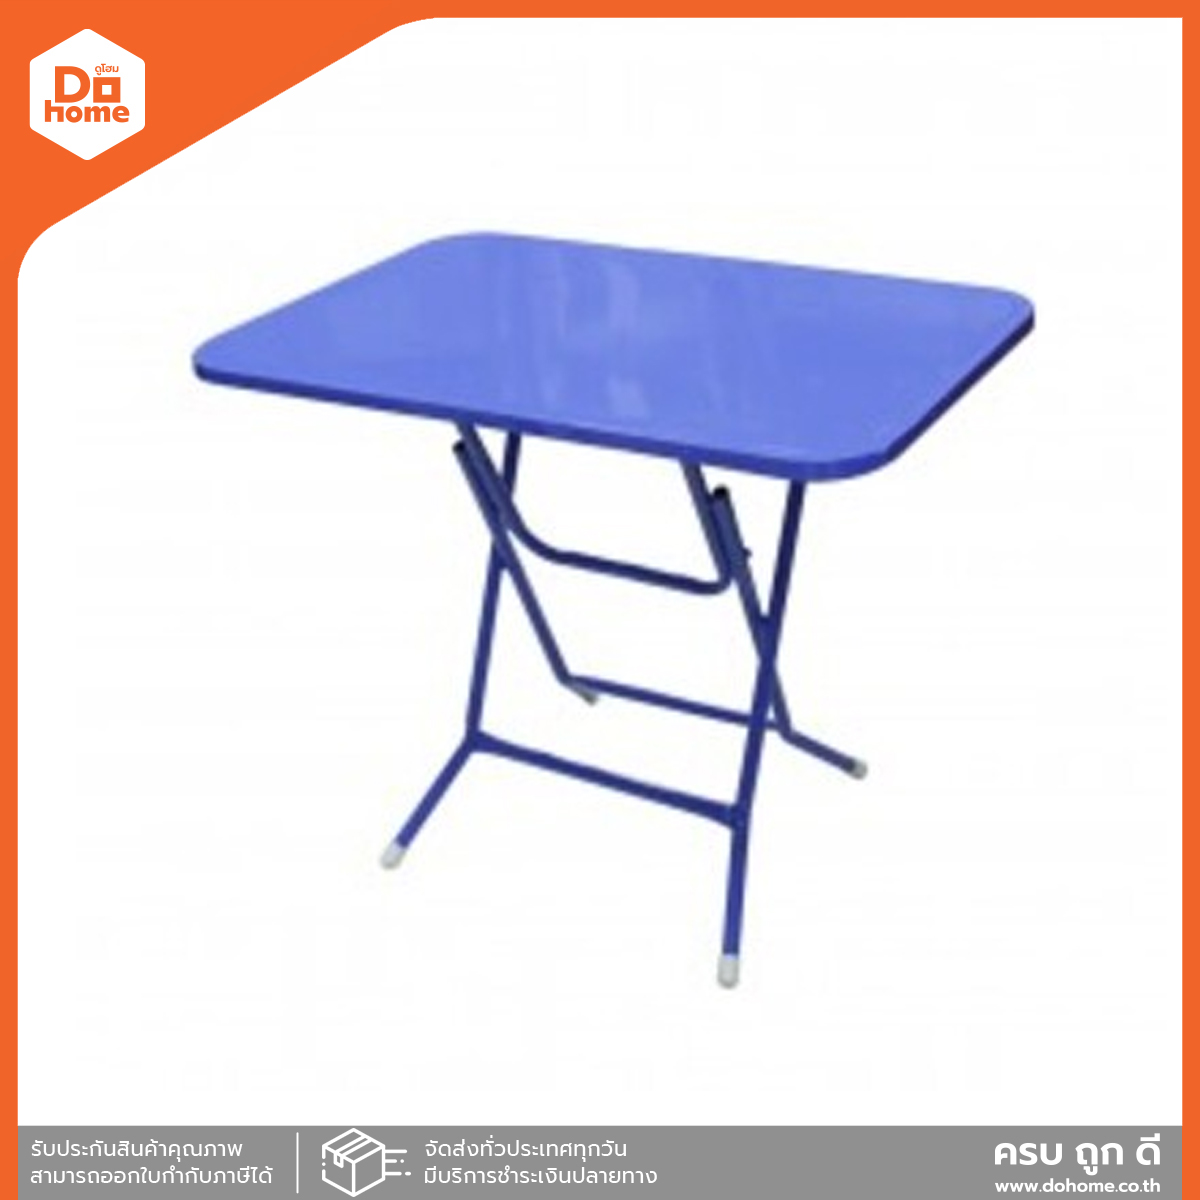 โต๊ะพับเหล็กขอบเหล็ก ขนาด 3 ฟุต สีน้ำเงิน |EA|